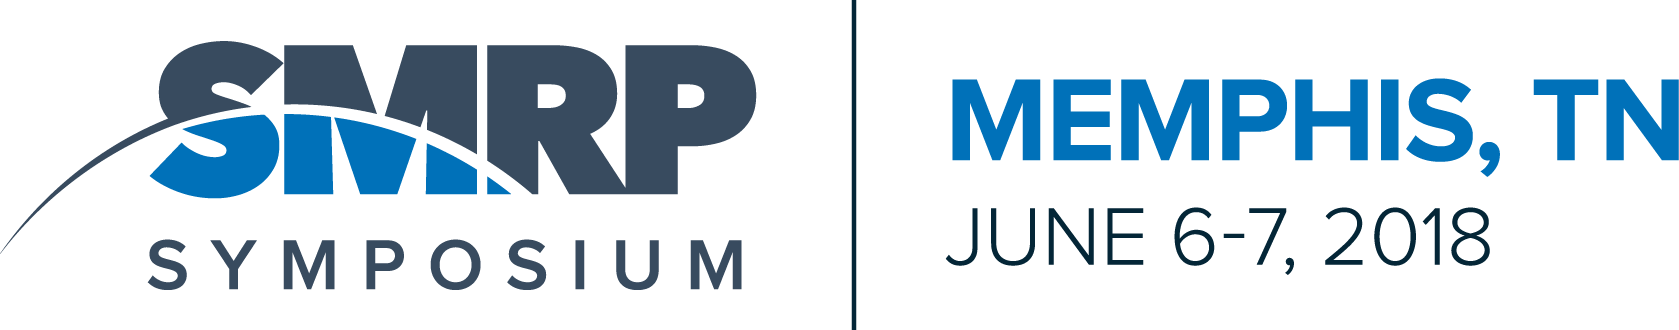 2018 Symposium Logo